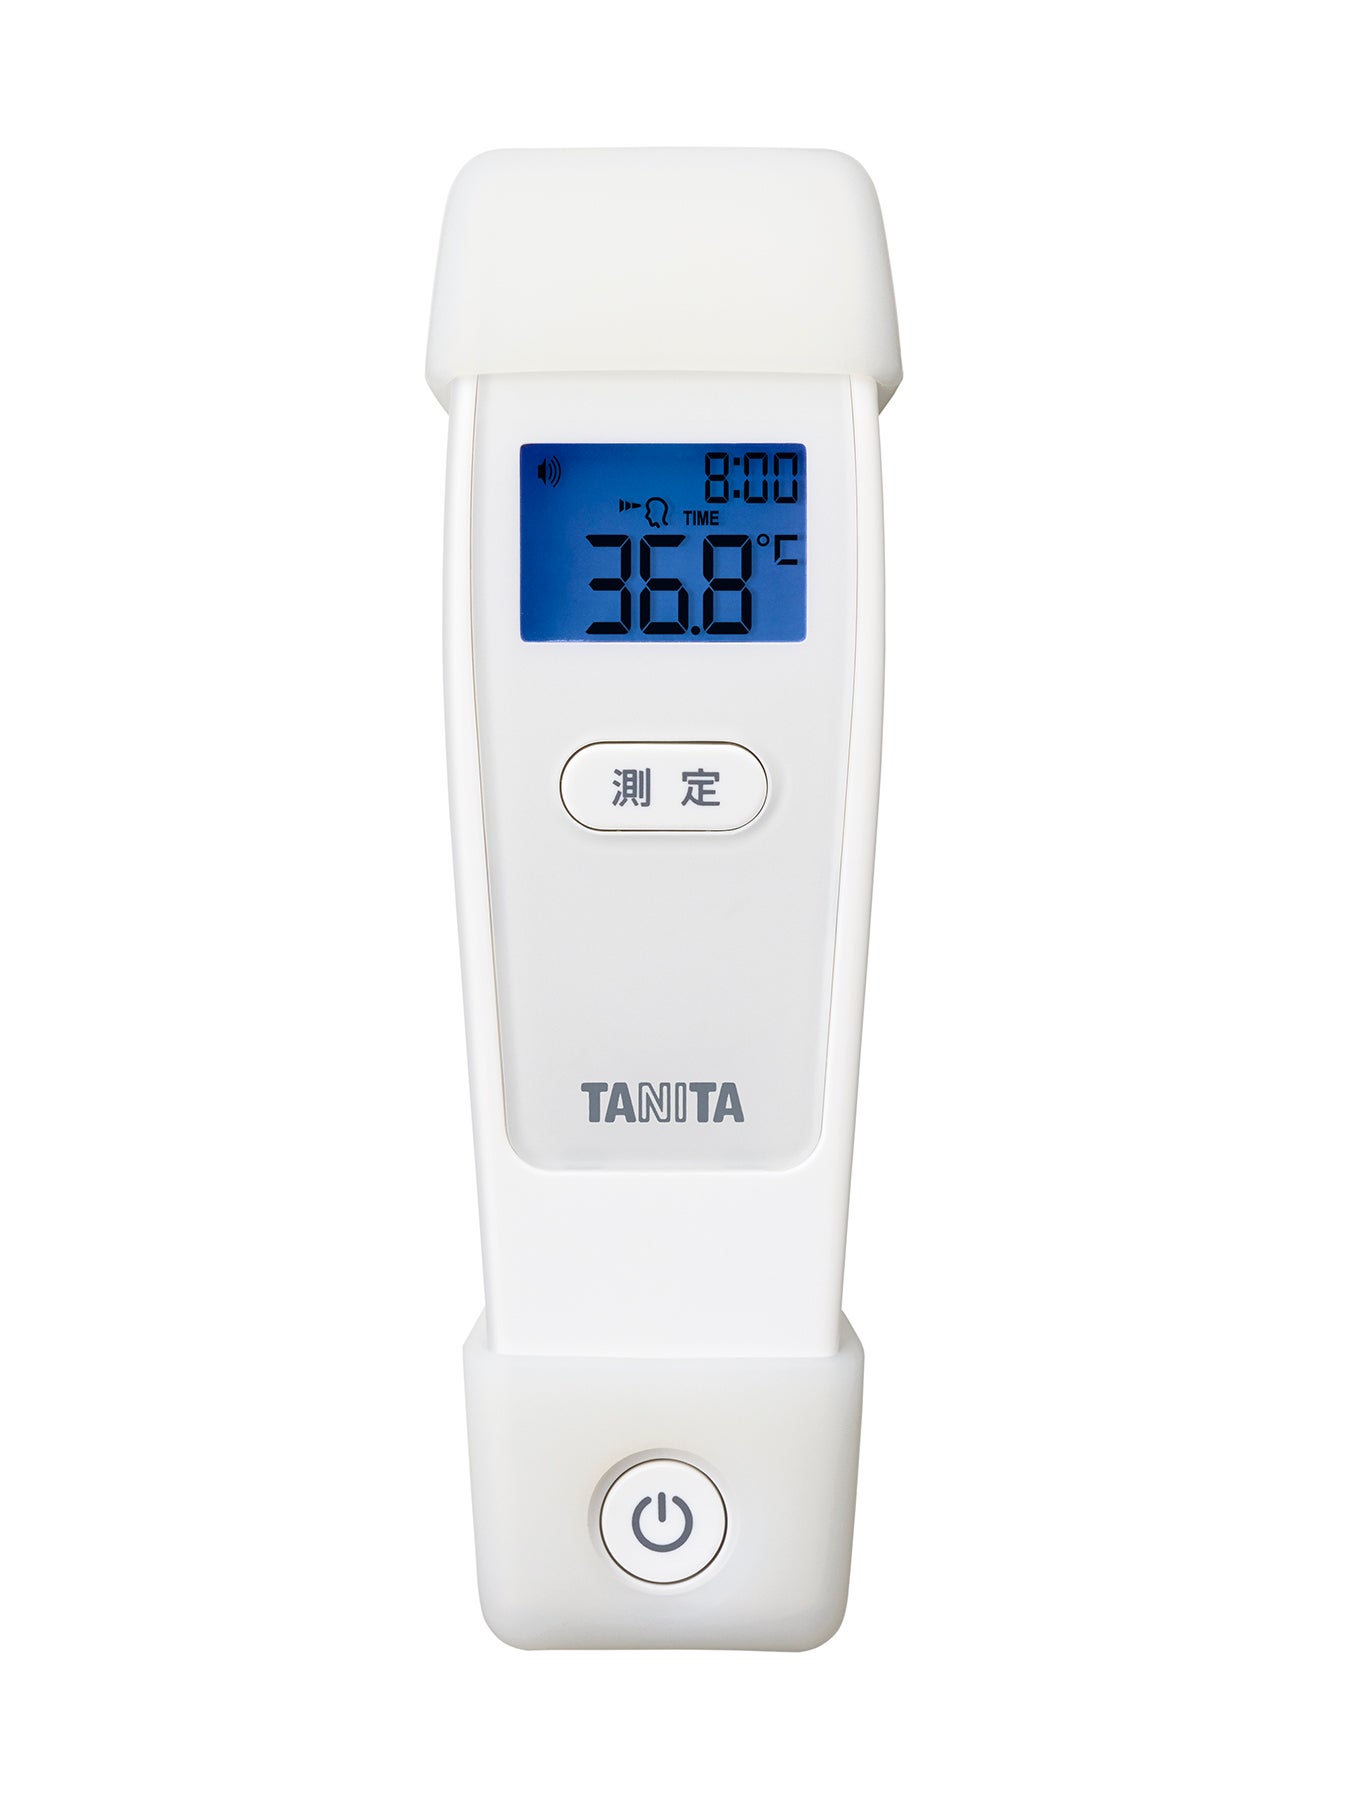 タニタ非接触体温計 BT-550 | タニタオンラインショップ